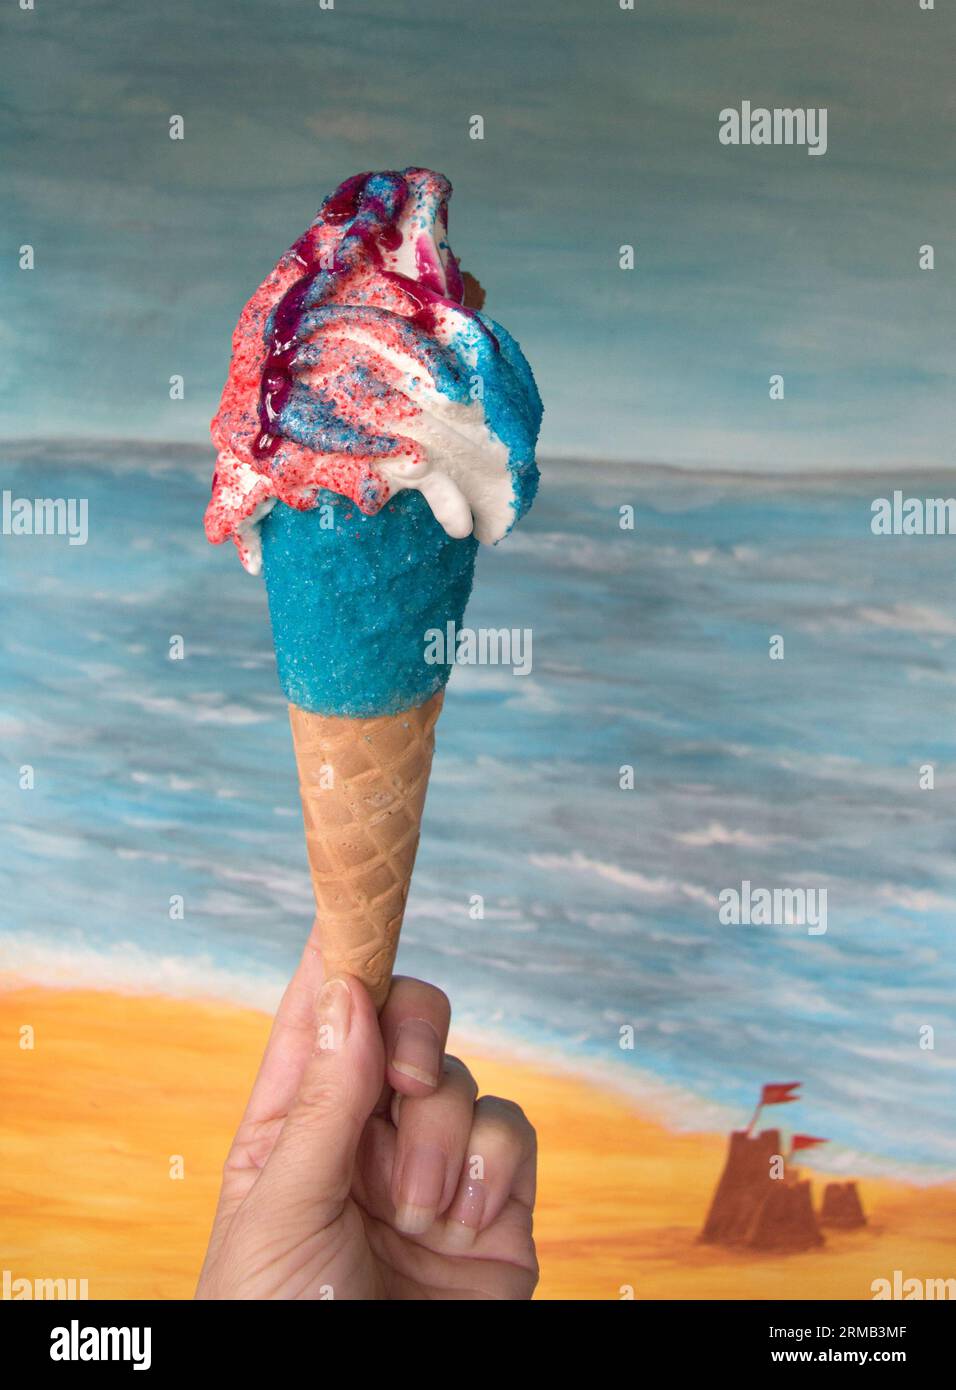 Gros plan du cornet de crème glacée fouettée Fancy sur la plage en bord de mer par temps chaud Banque D'Images